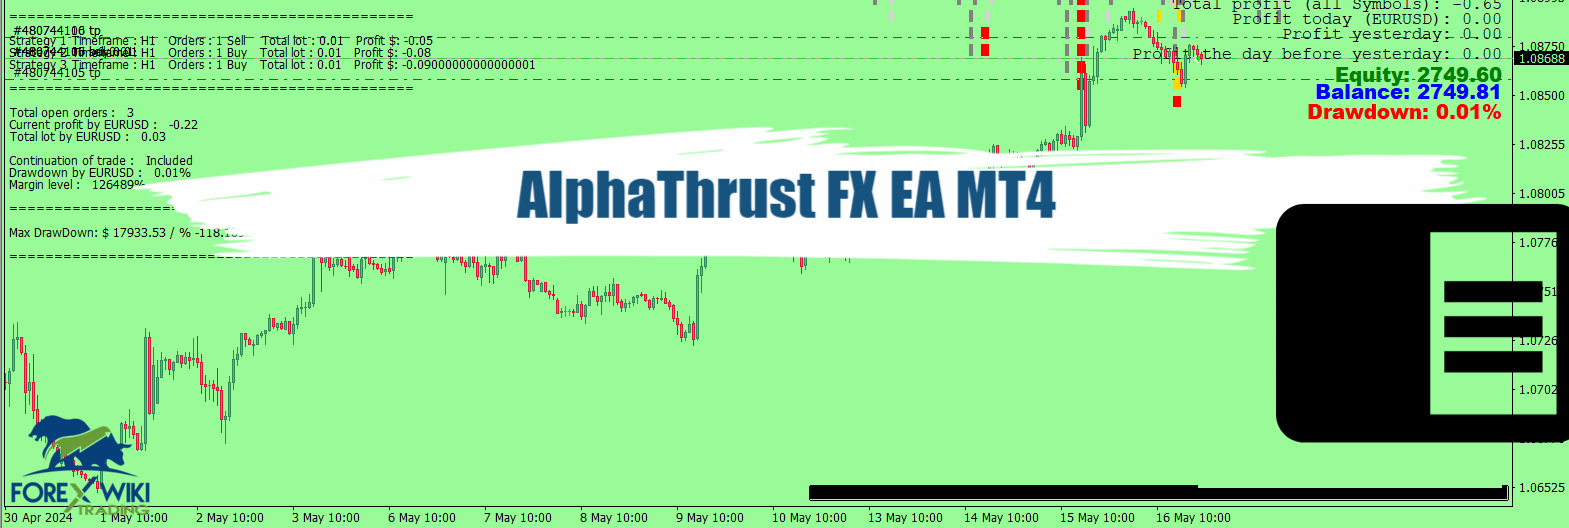 AlphaThrust FX EA MT4 - Free Download 35